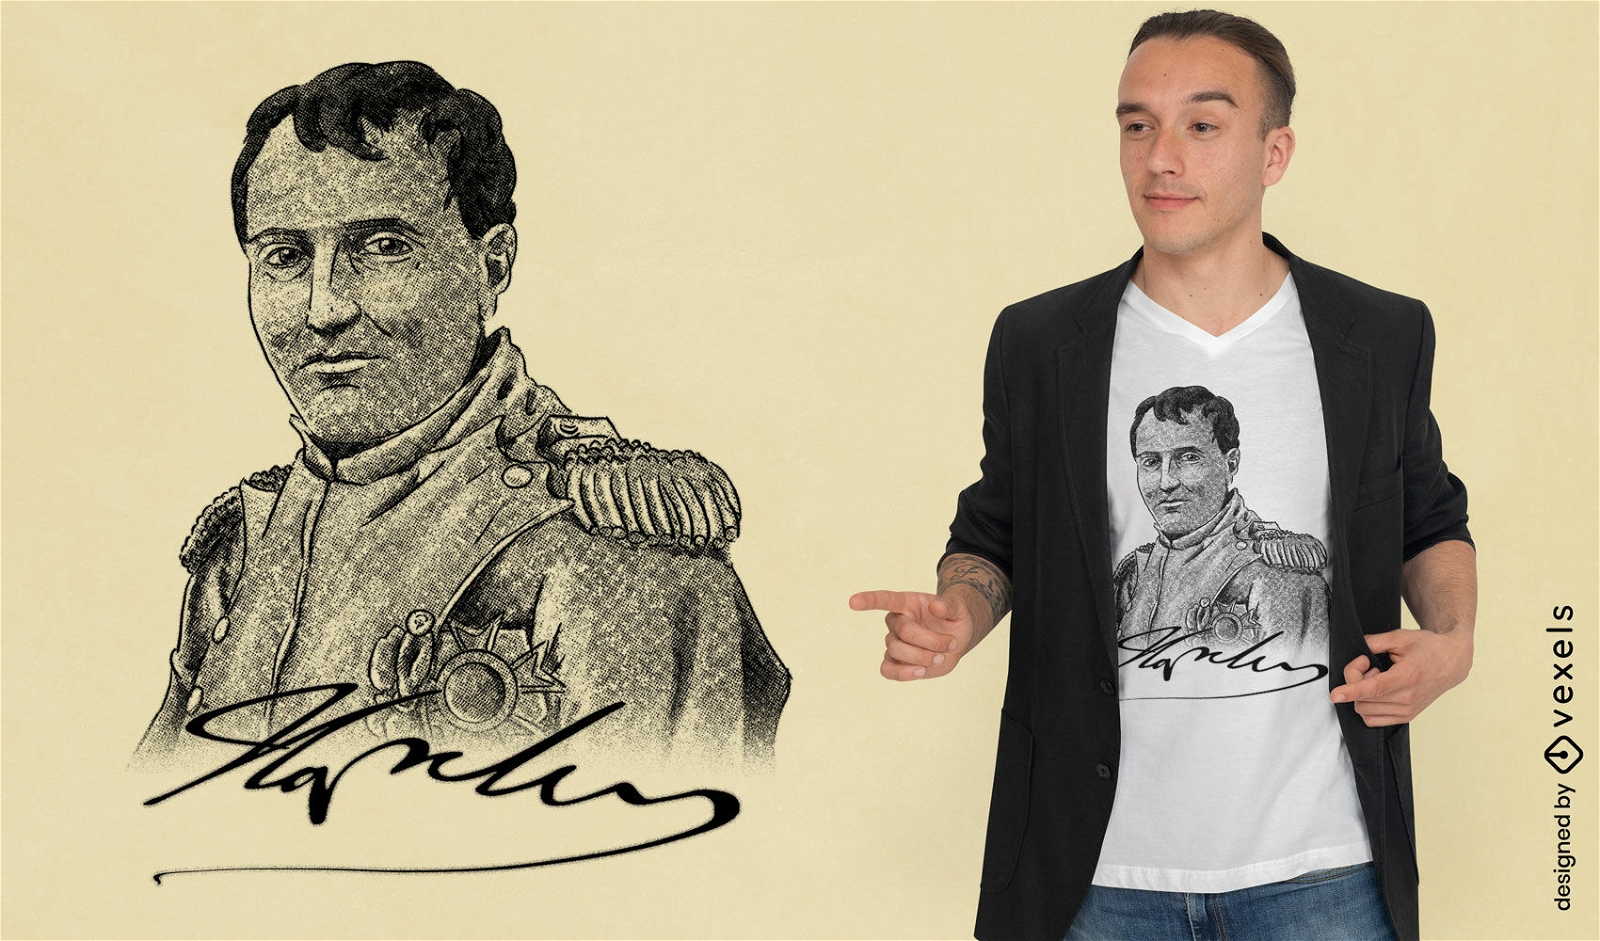 Retrato de Napole?o e design de camiseta de assinatura